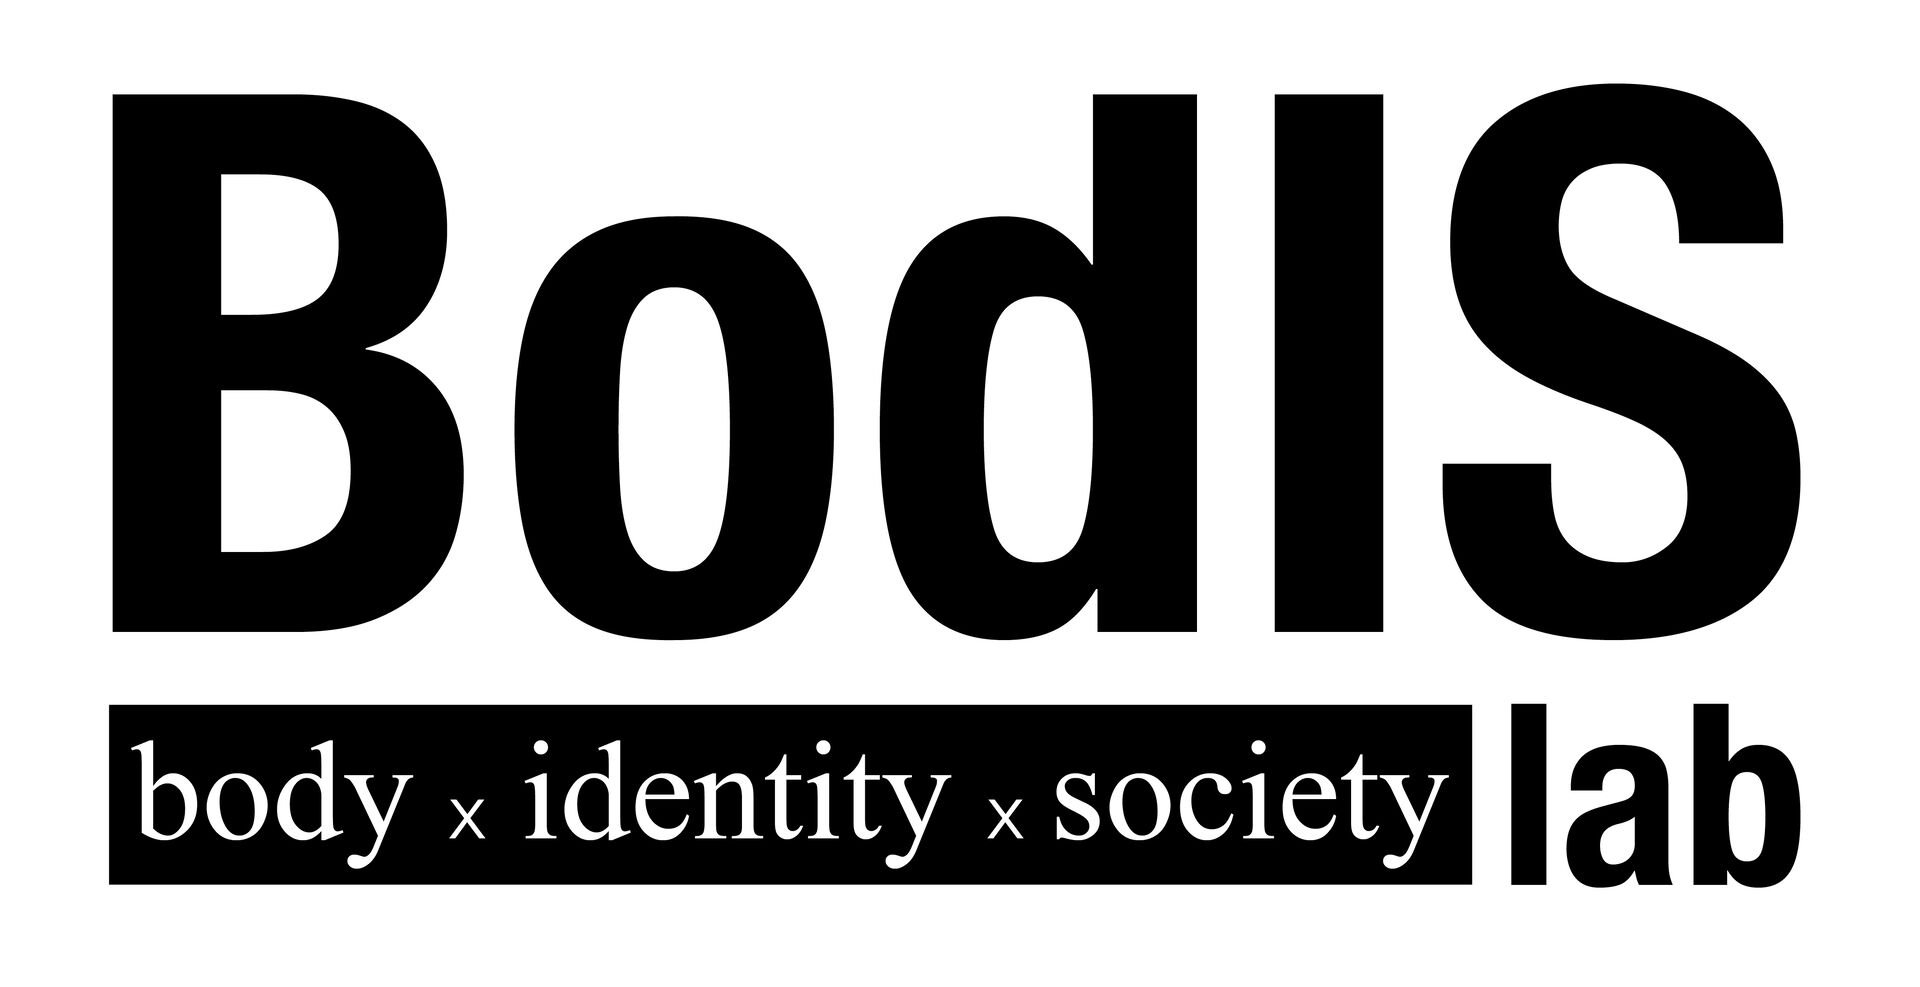 Forskningsgruppens logo; "BodIS" med stor skrift øverst, og "body x identity x society lab" under.